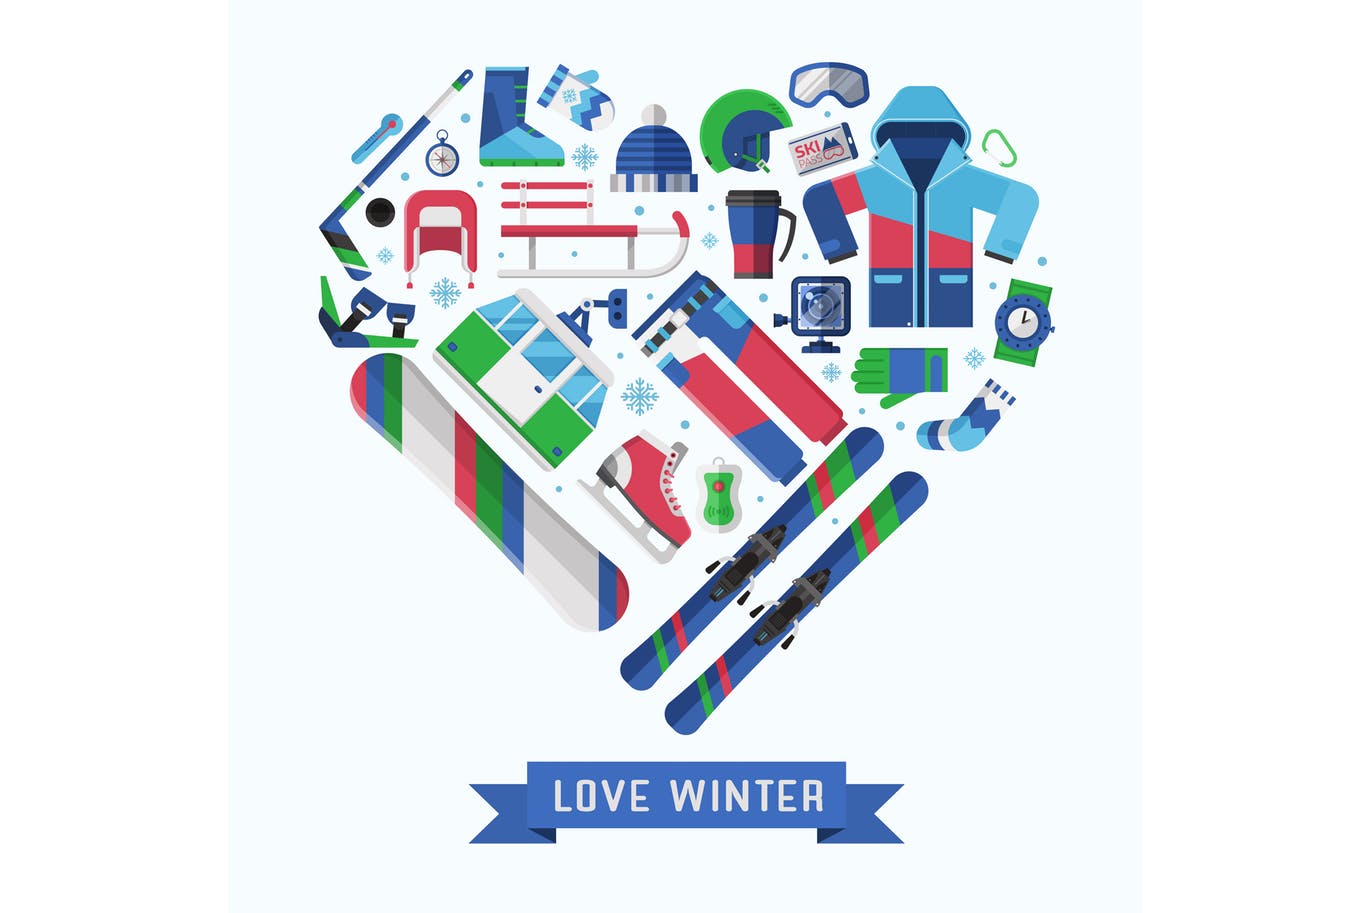 冬季运动主题扁平设计风格心形矢量插画蚂蚁素材精选 Love Winter Sports Heart Print插图